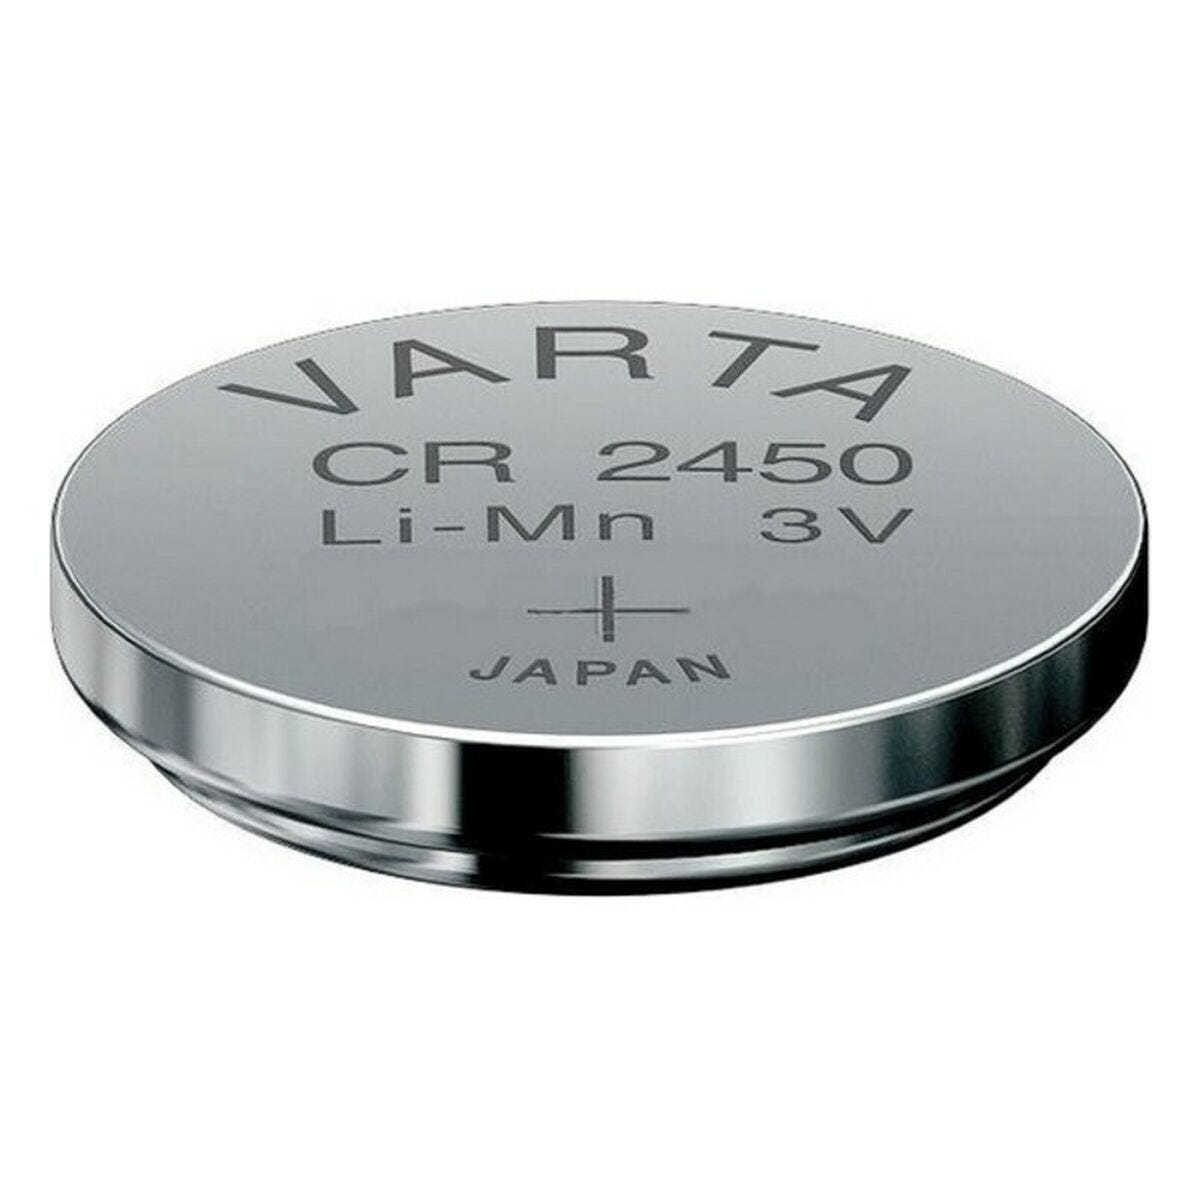 Pila botón de litio, CR2450 - RECAMPRO